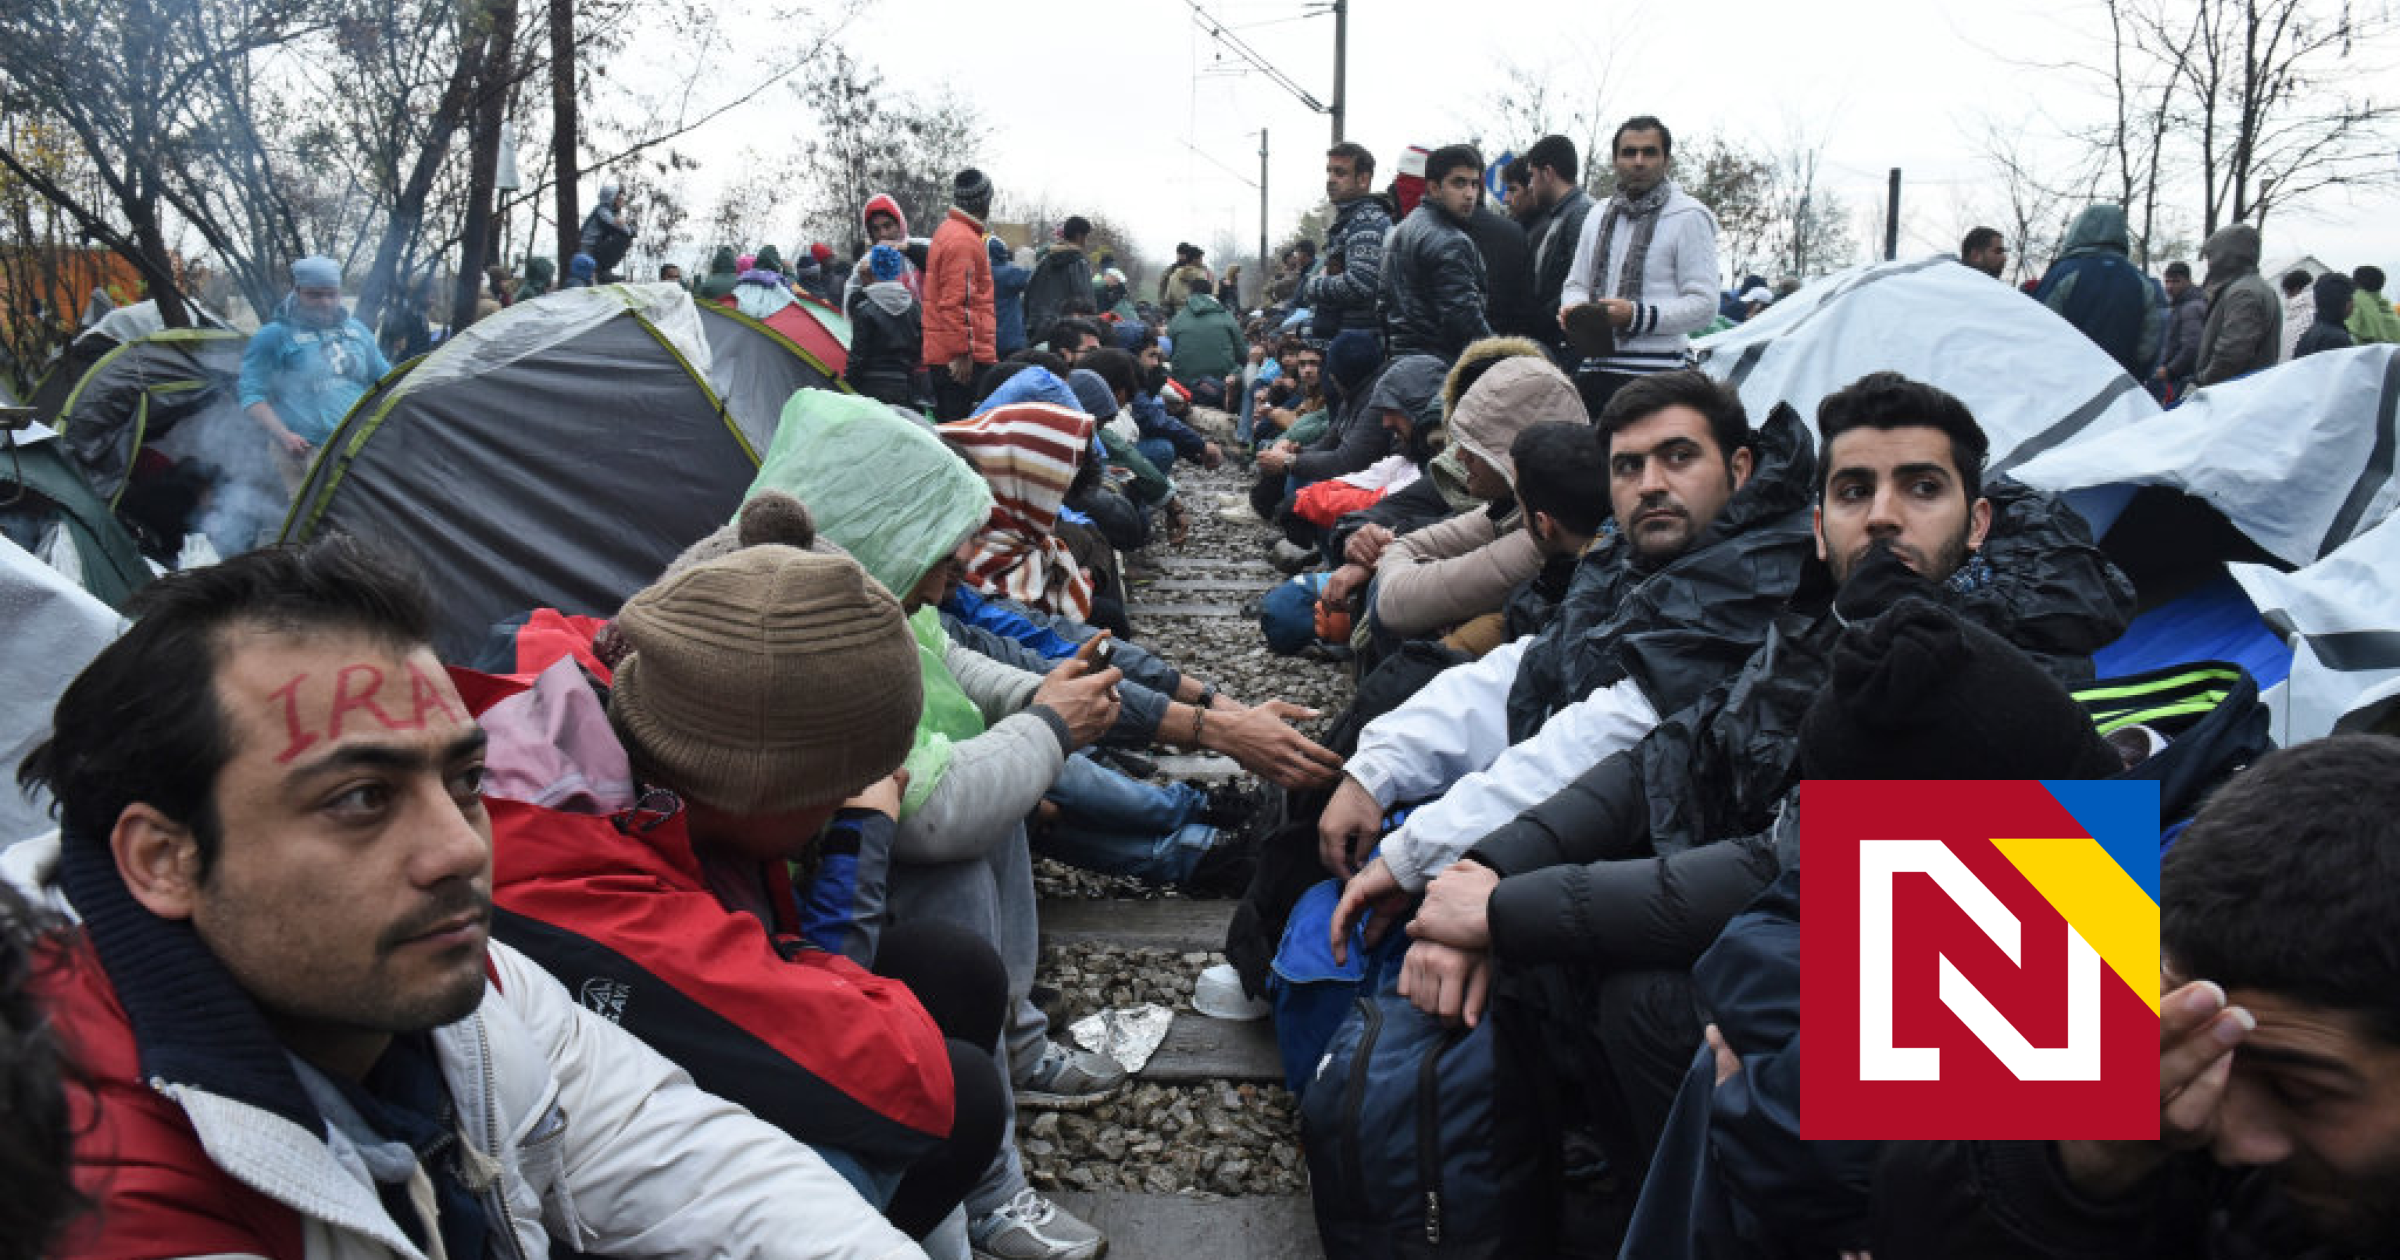 La Suède se ferme aux réfugiés, Merkel ne change pas son attitude ouverte